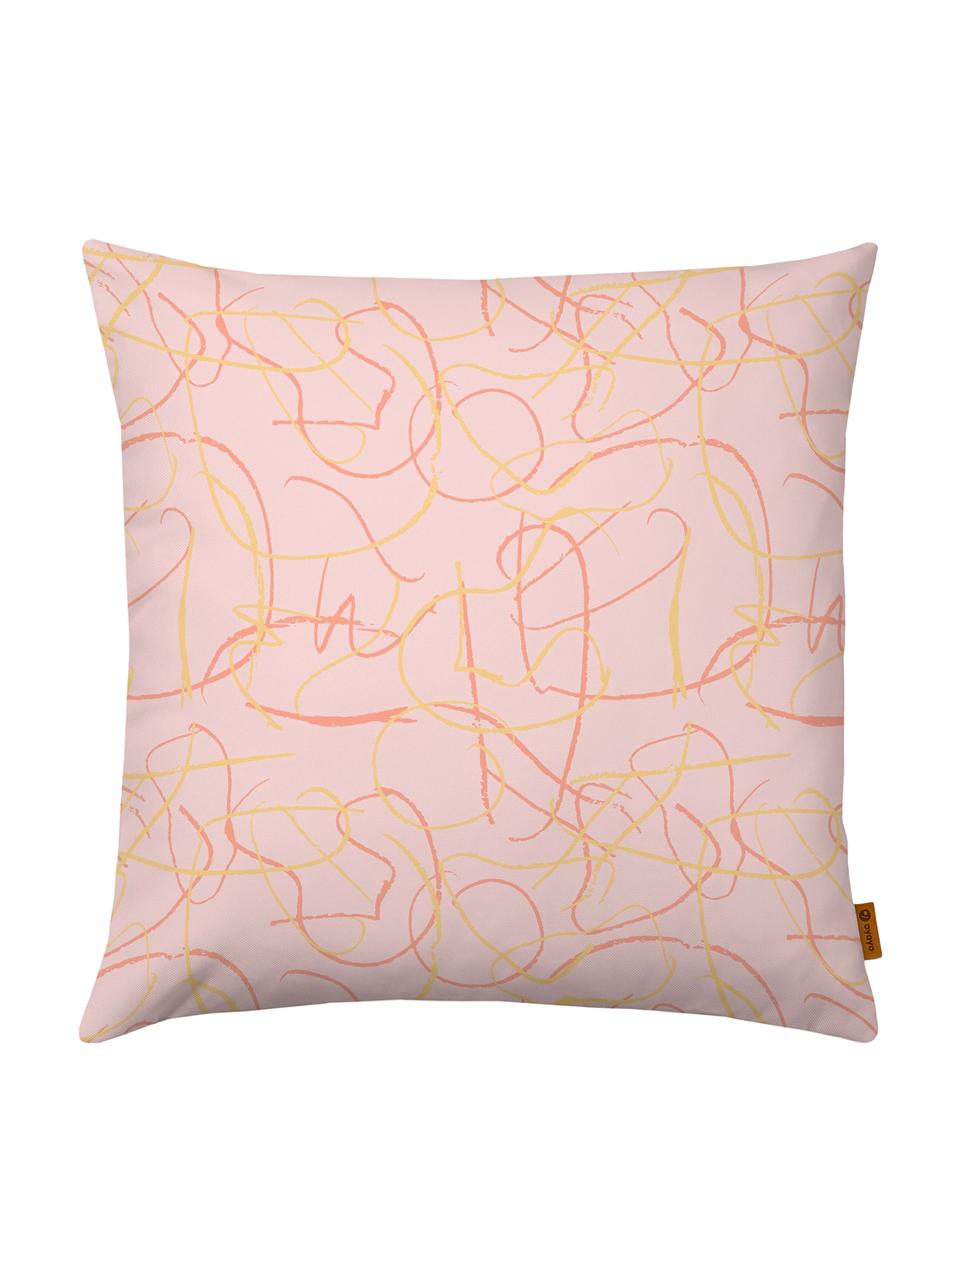 Kussenhoes Doodle met abstract patroon in roze/geel, Polyester, Roze, geel, 40 x 40 cm